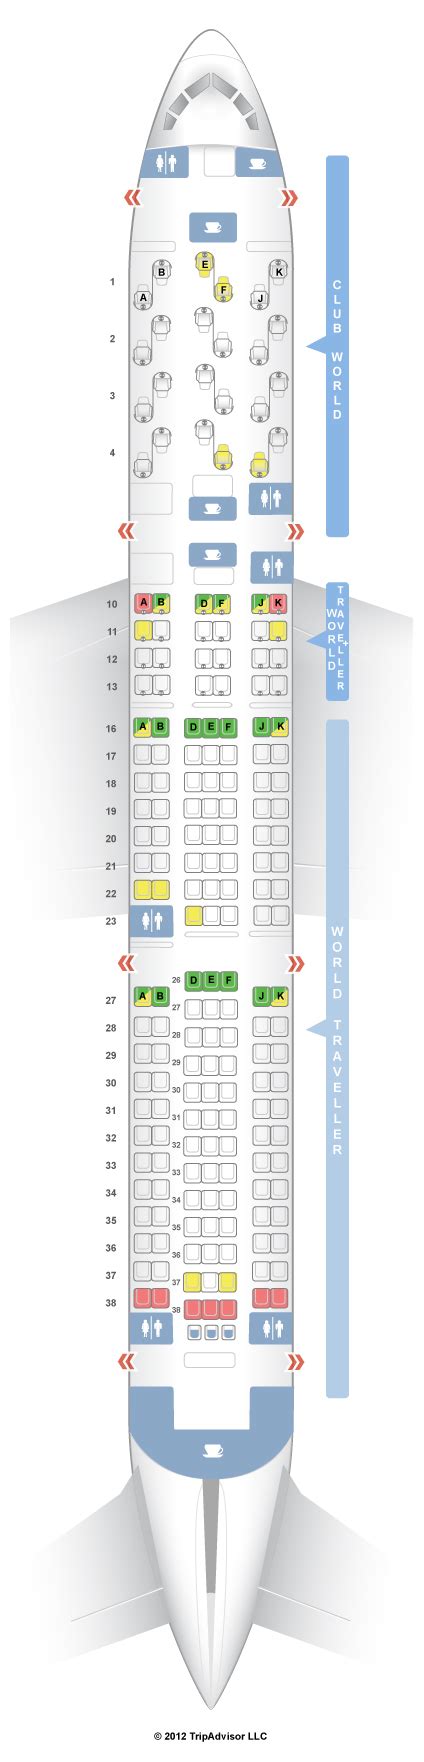 Seatguru Seat Map British Airways Boeing 767 300 763 Worldwide